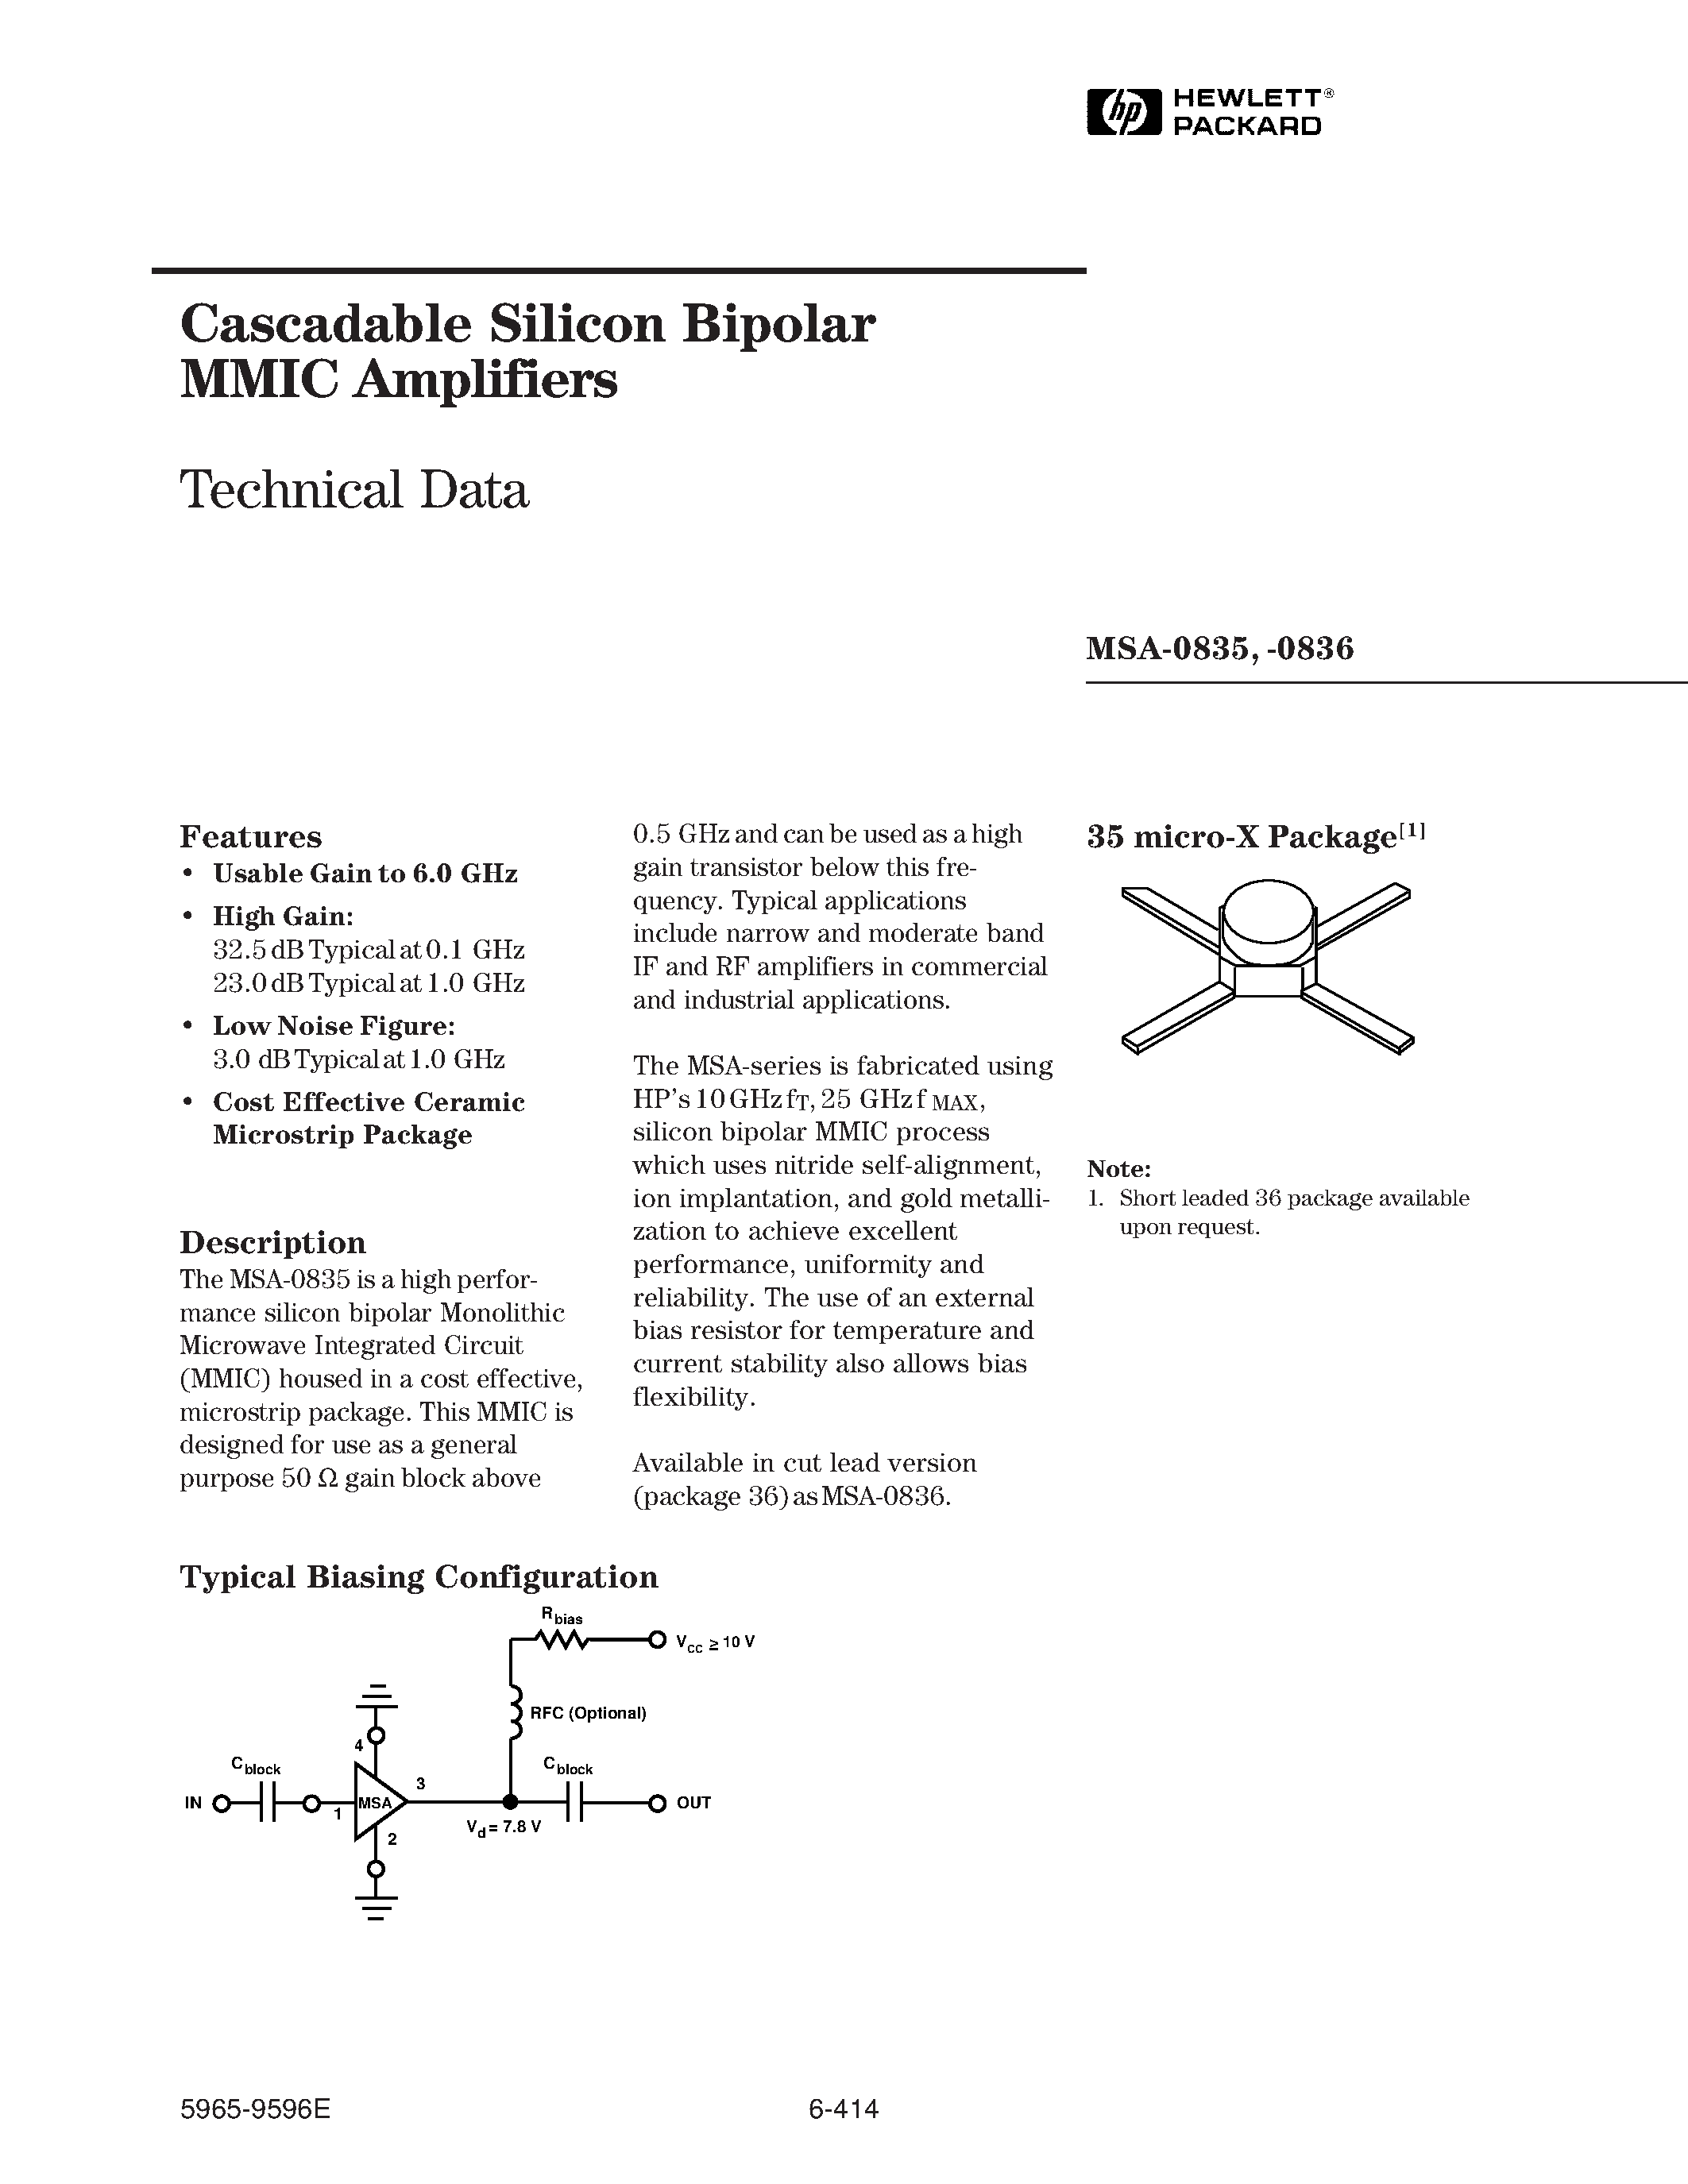 Даташит MSA-0835 - (MSA-0835 / MSA-0836) Cascadable Silicon Bipolar MMIC Amplifier страница 1